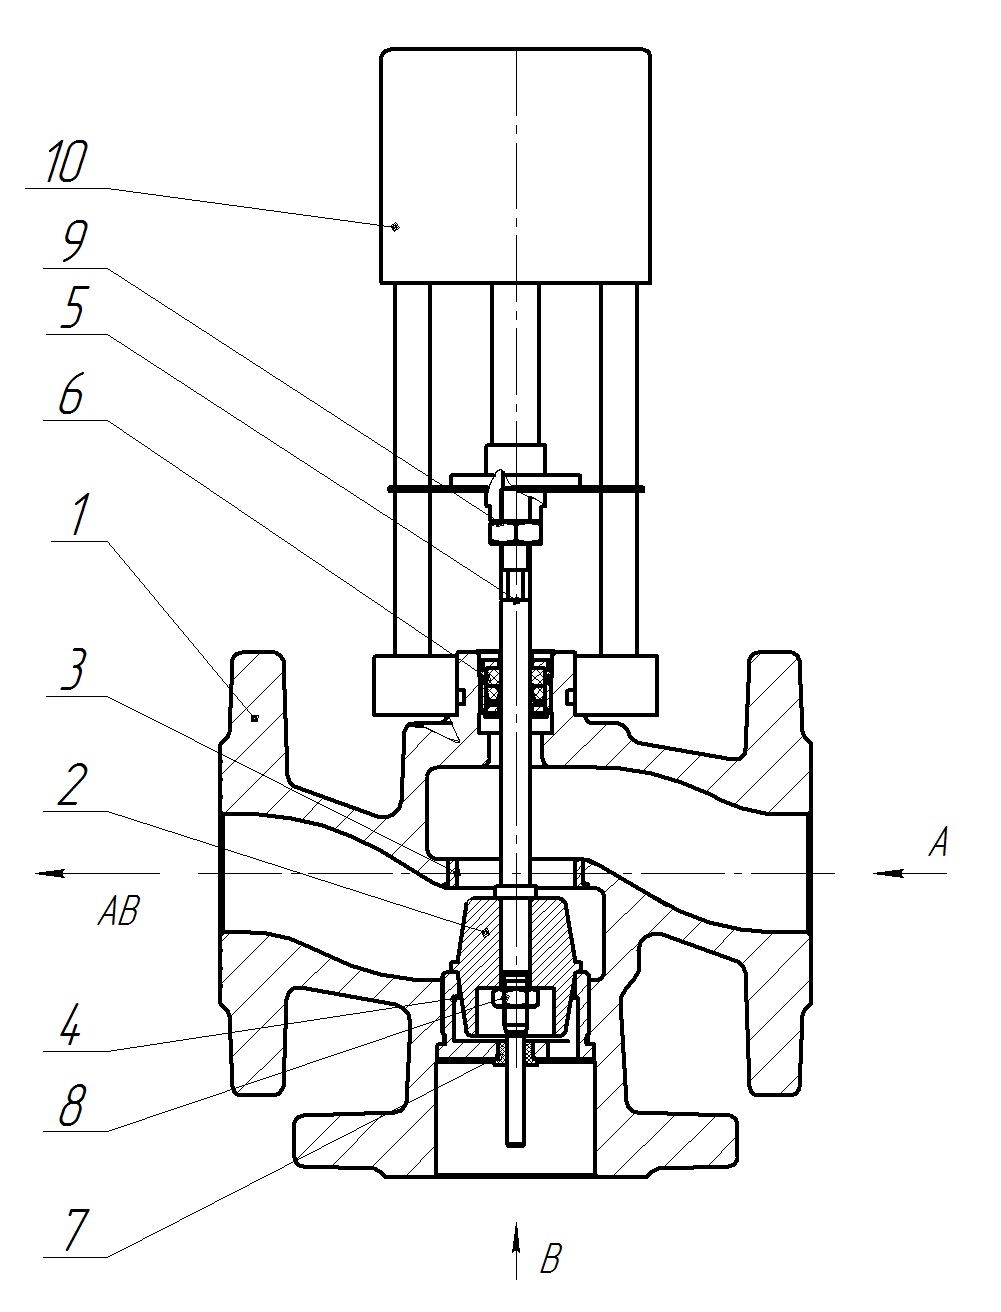 Клапан регулирующий трехходовой разделительный DN.ru 23ч901нж Ду80 Ру16 Kvs63 серый чугун СЧ20, фланцевый, Tmax до 150°С с электроприводом Катрабел TW-3000-XD220